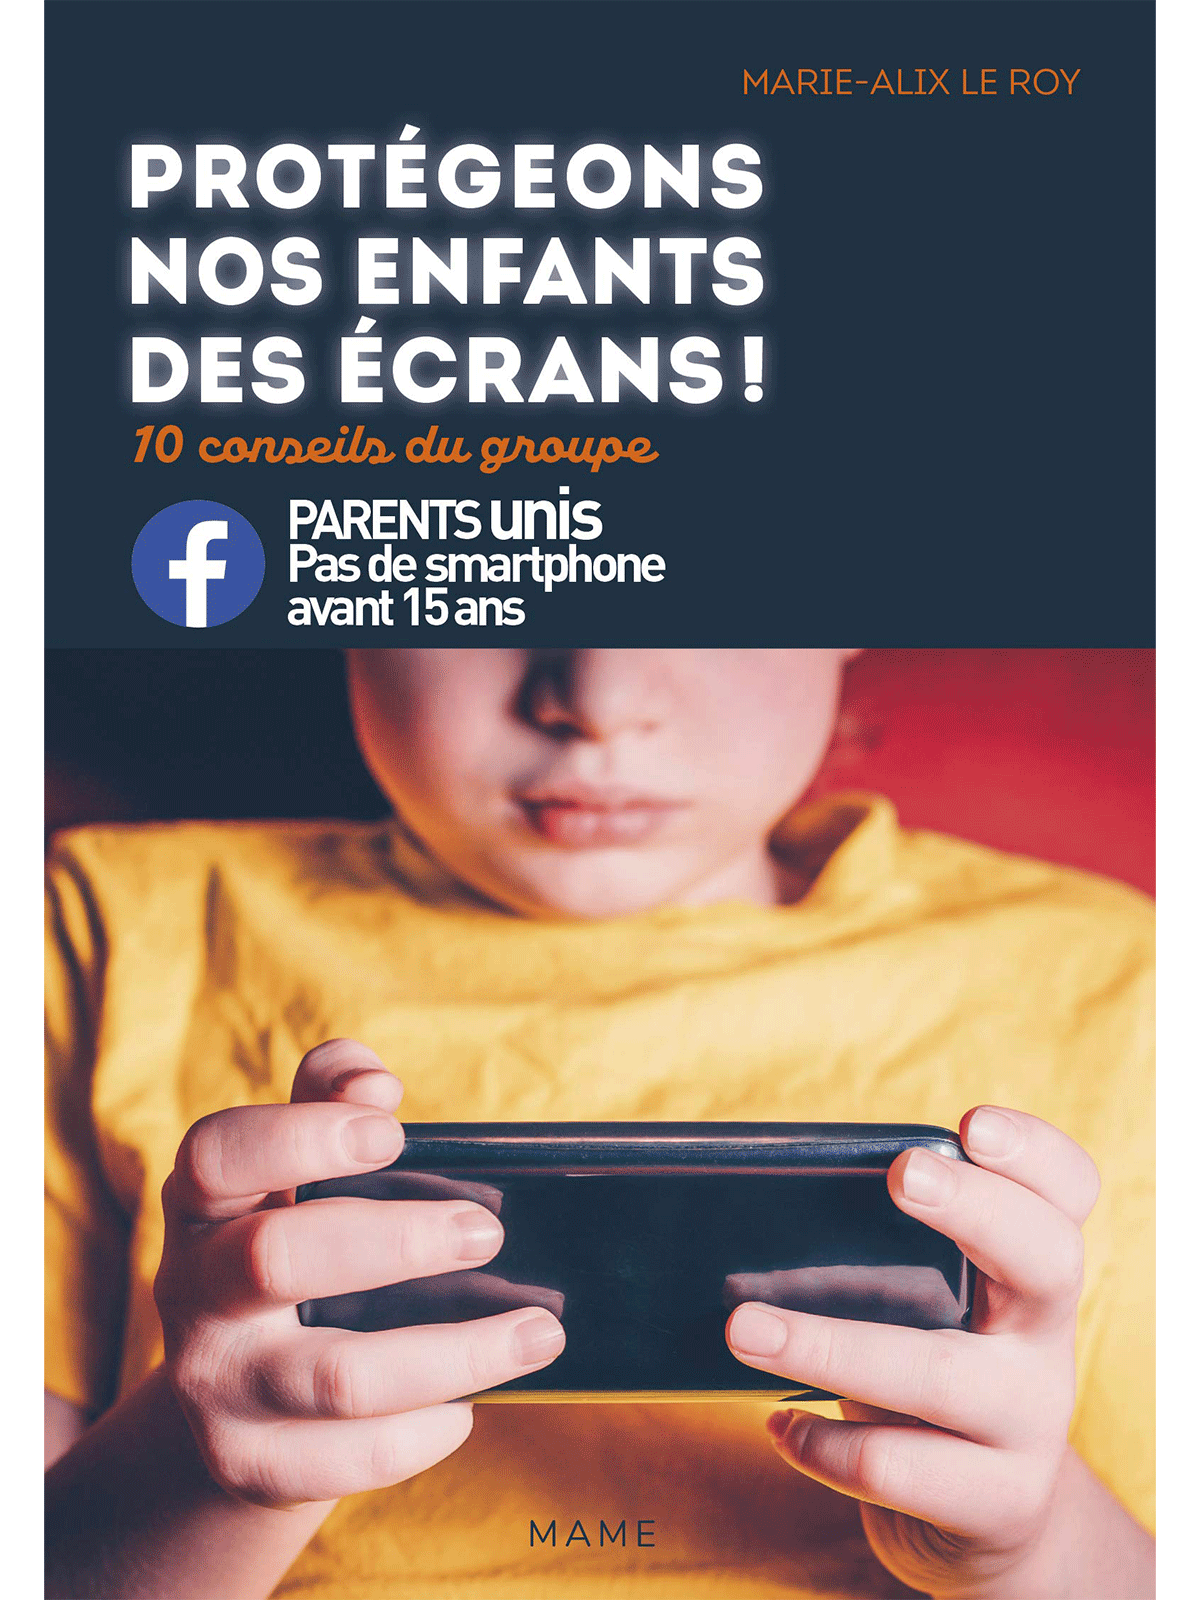 Marie-Alix Le Roy : Protégeons nos enfants des écrans !